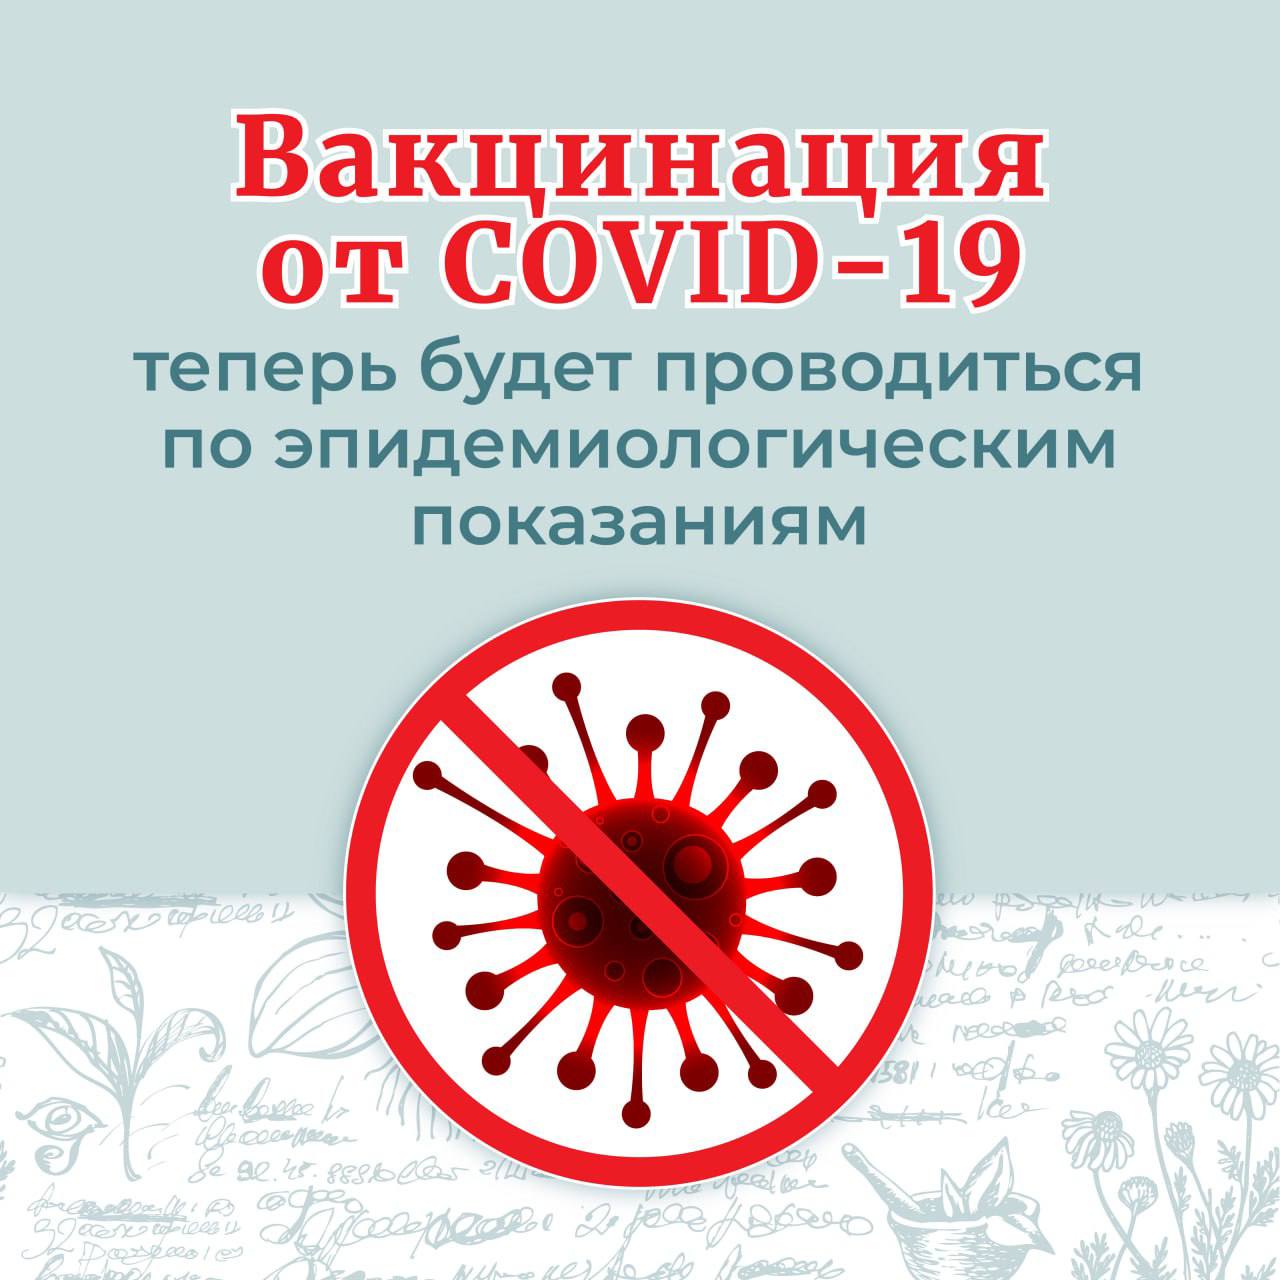 Вакцинация от COVID-19 теперь будет проводиться по эпидемиологическим показаниям, как от сезонного гриппа